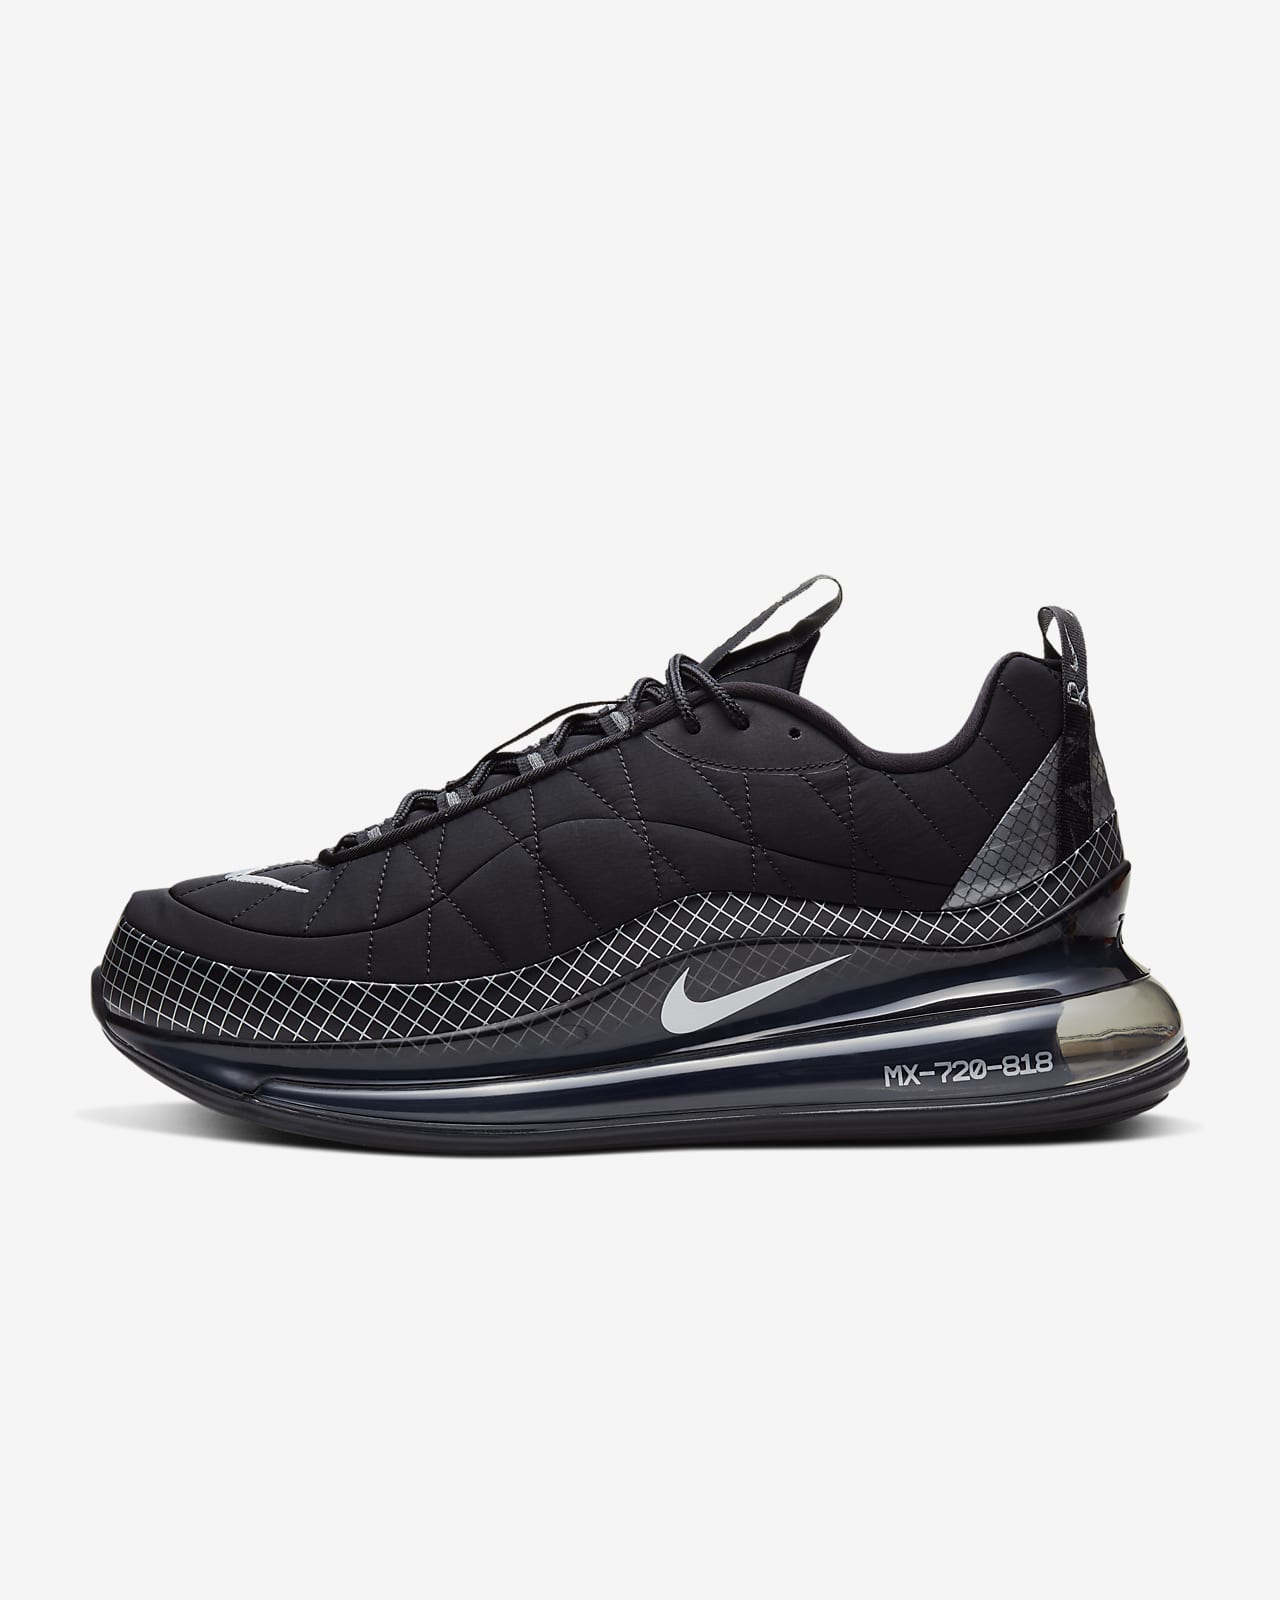 Nike MX-720-818 Men's Shoe